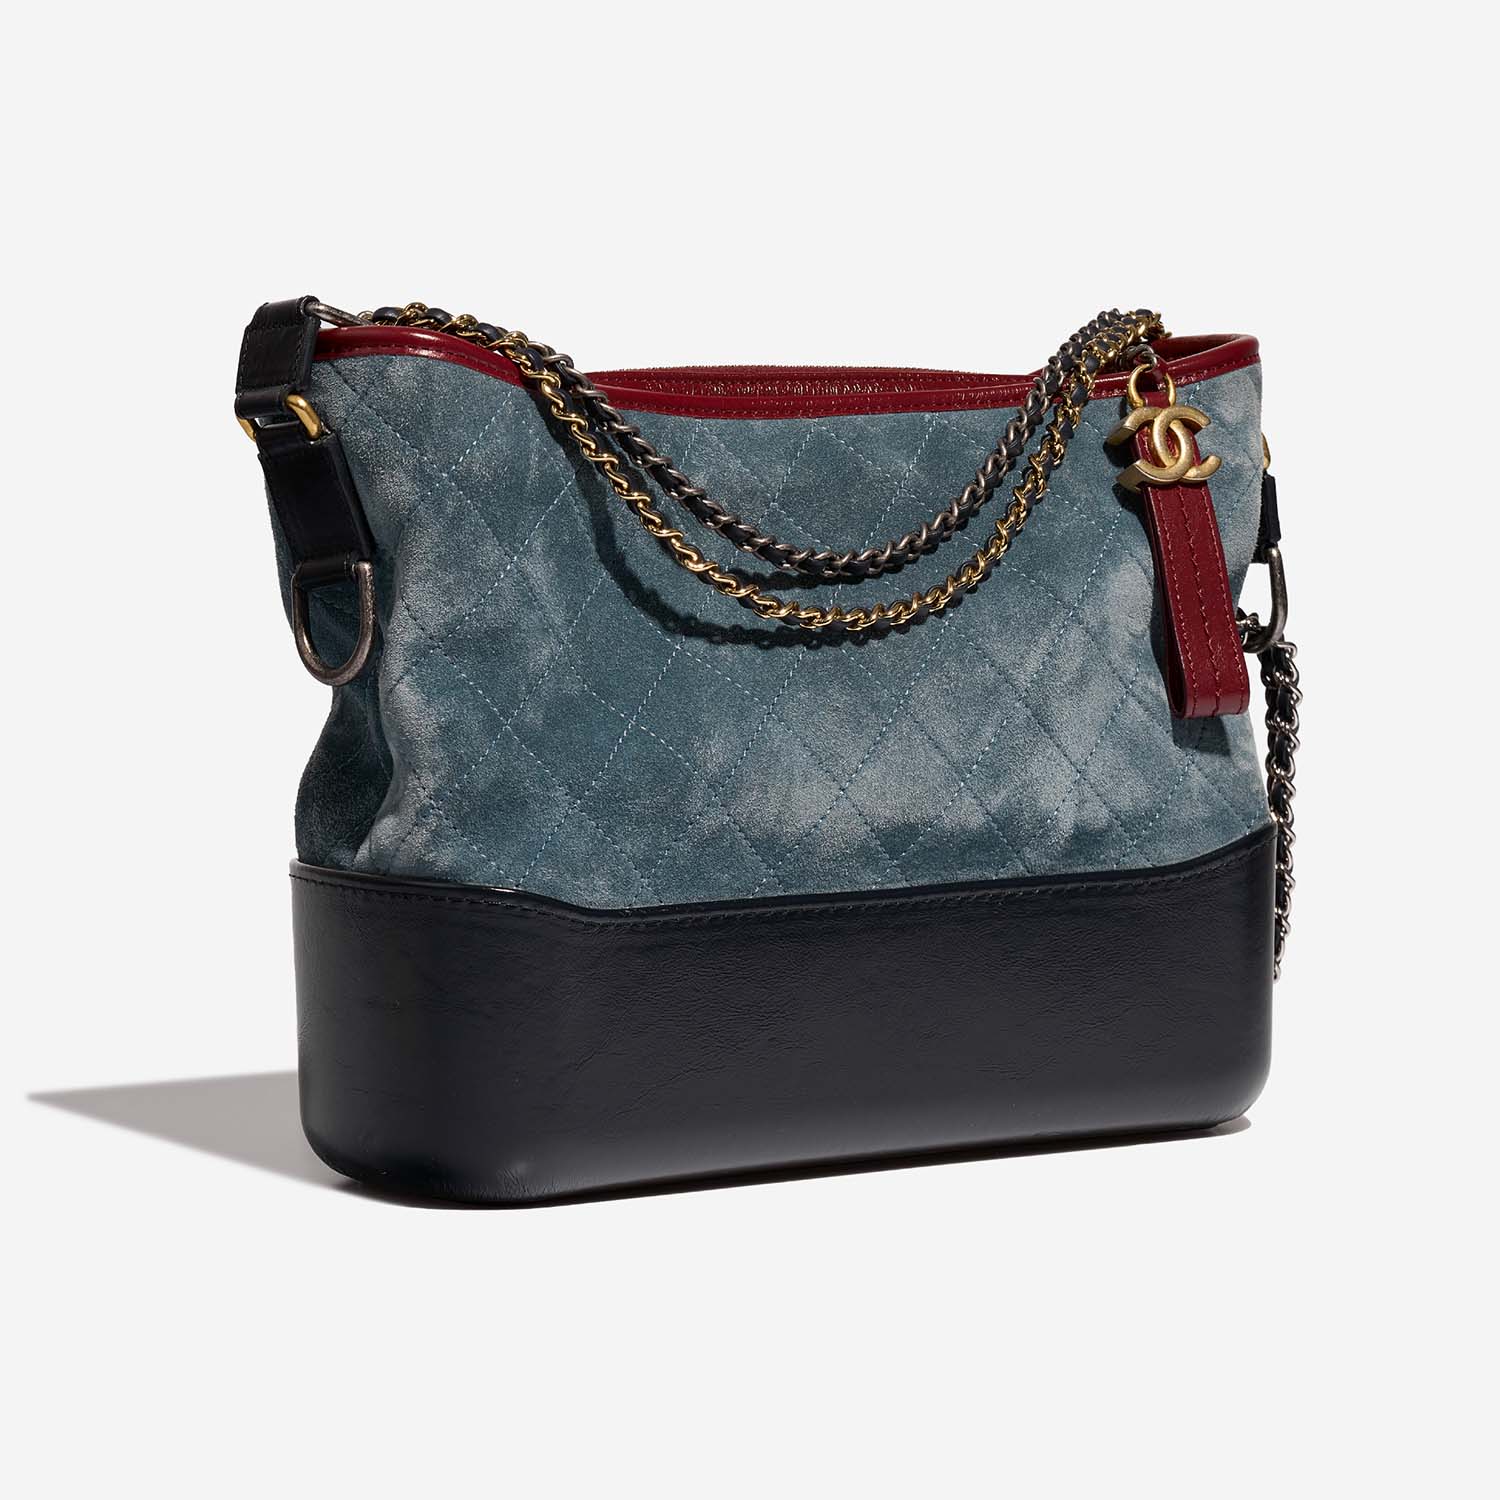 Chanel Gabrielle Medium Blau-Navy-Rot 6SF S | Verkaufen Sie Ihre Designer-Tasche auf Saclab.com